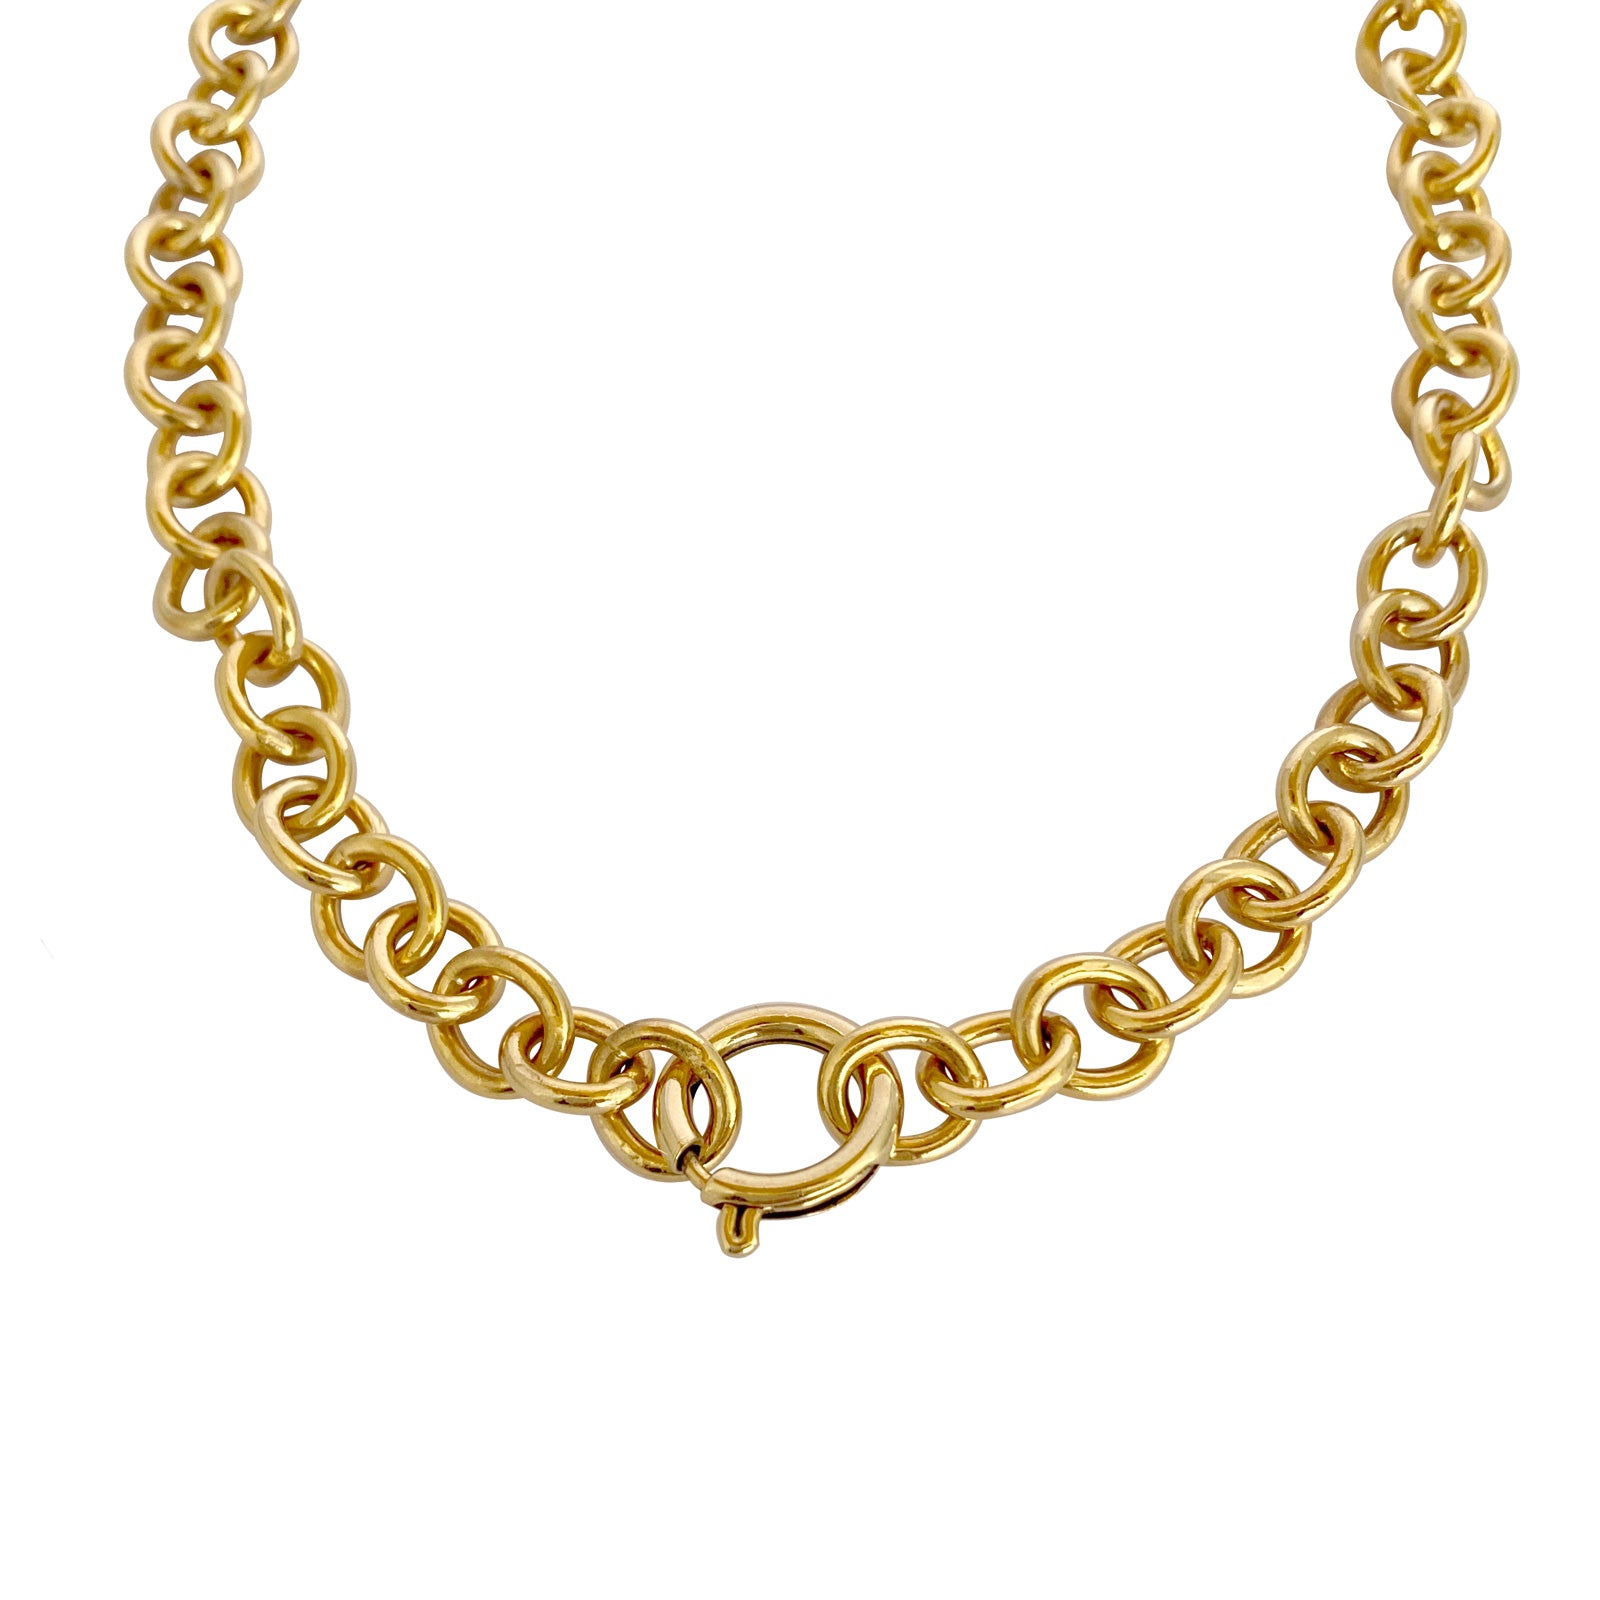 cadena gruesa dorada broche en el centro joyas misticas